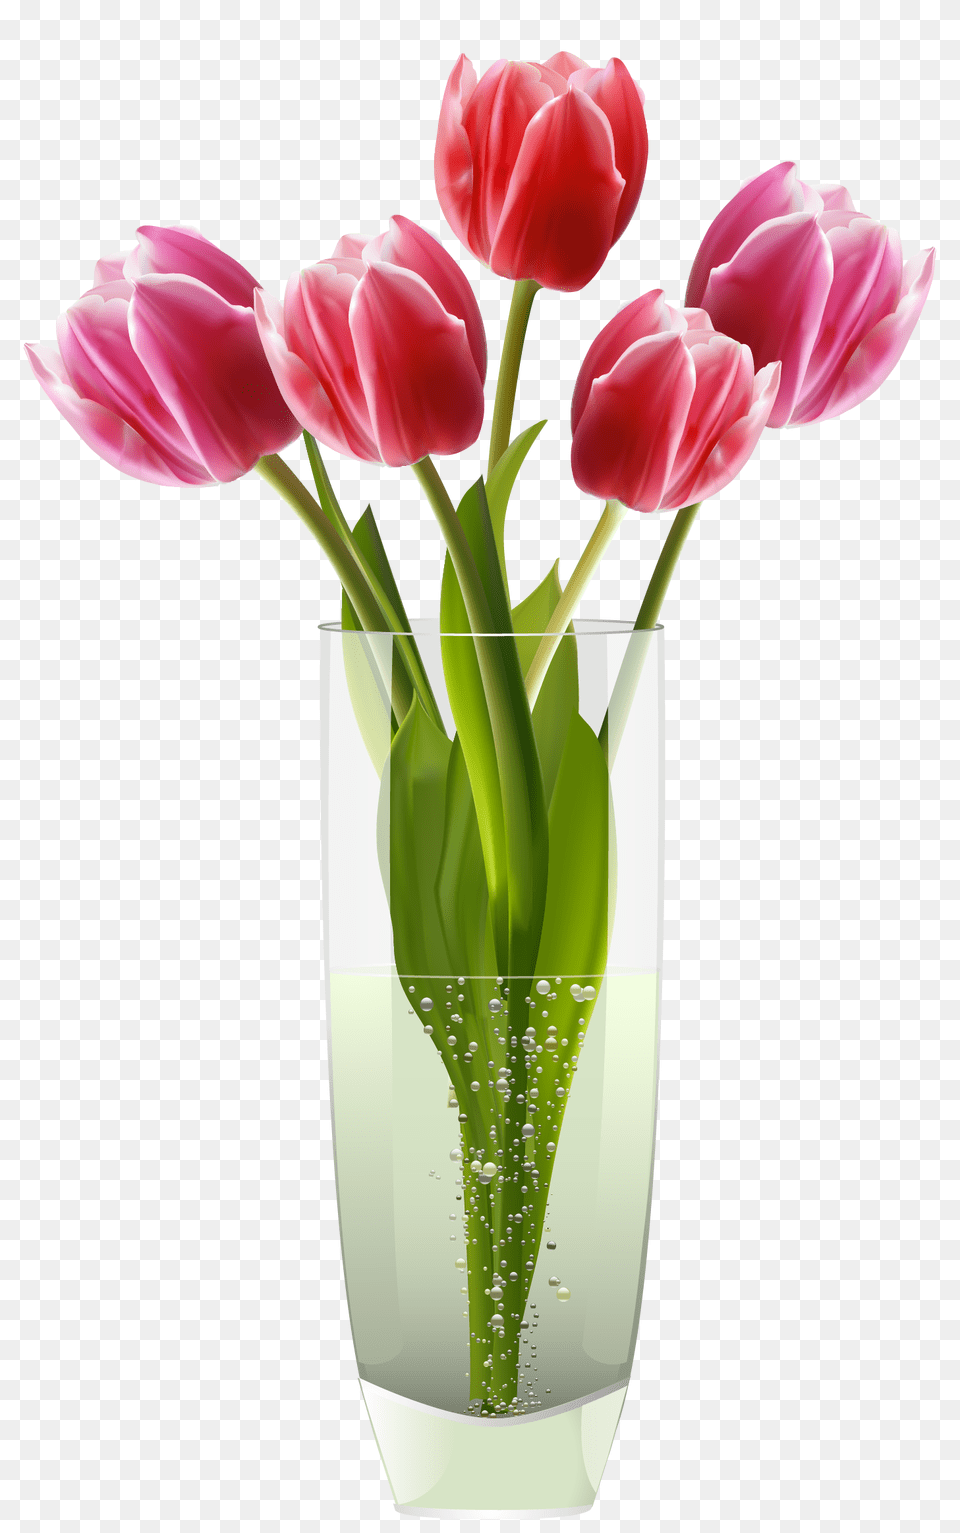 Surprising Useful Ideas Vases Vintage Plants Large Wooden Vases, Flower, Flower Arrangement, Jar, Plant Png Image